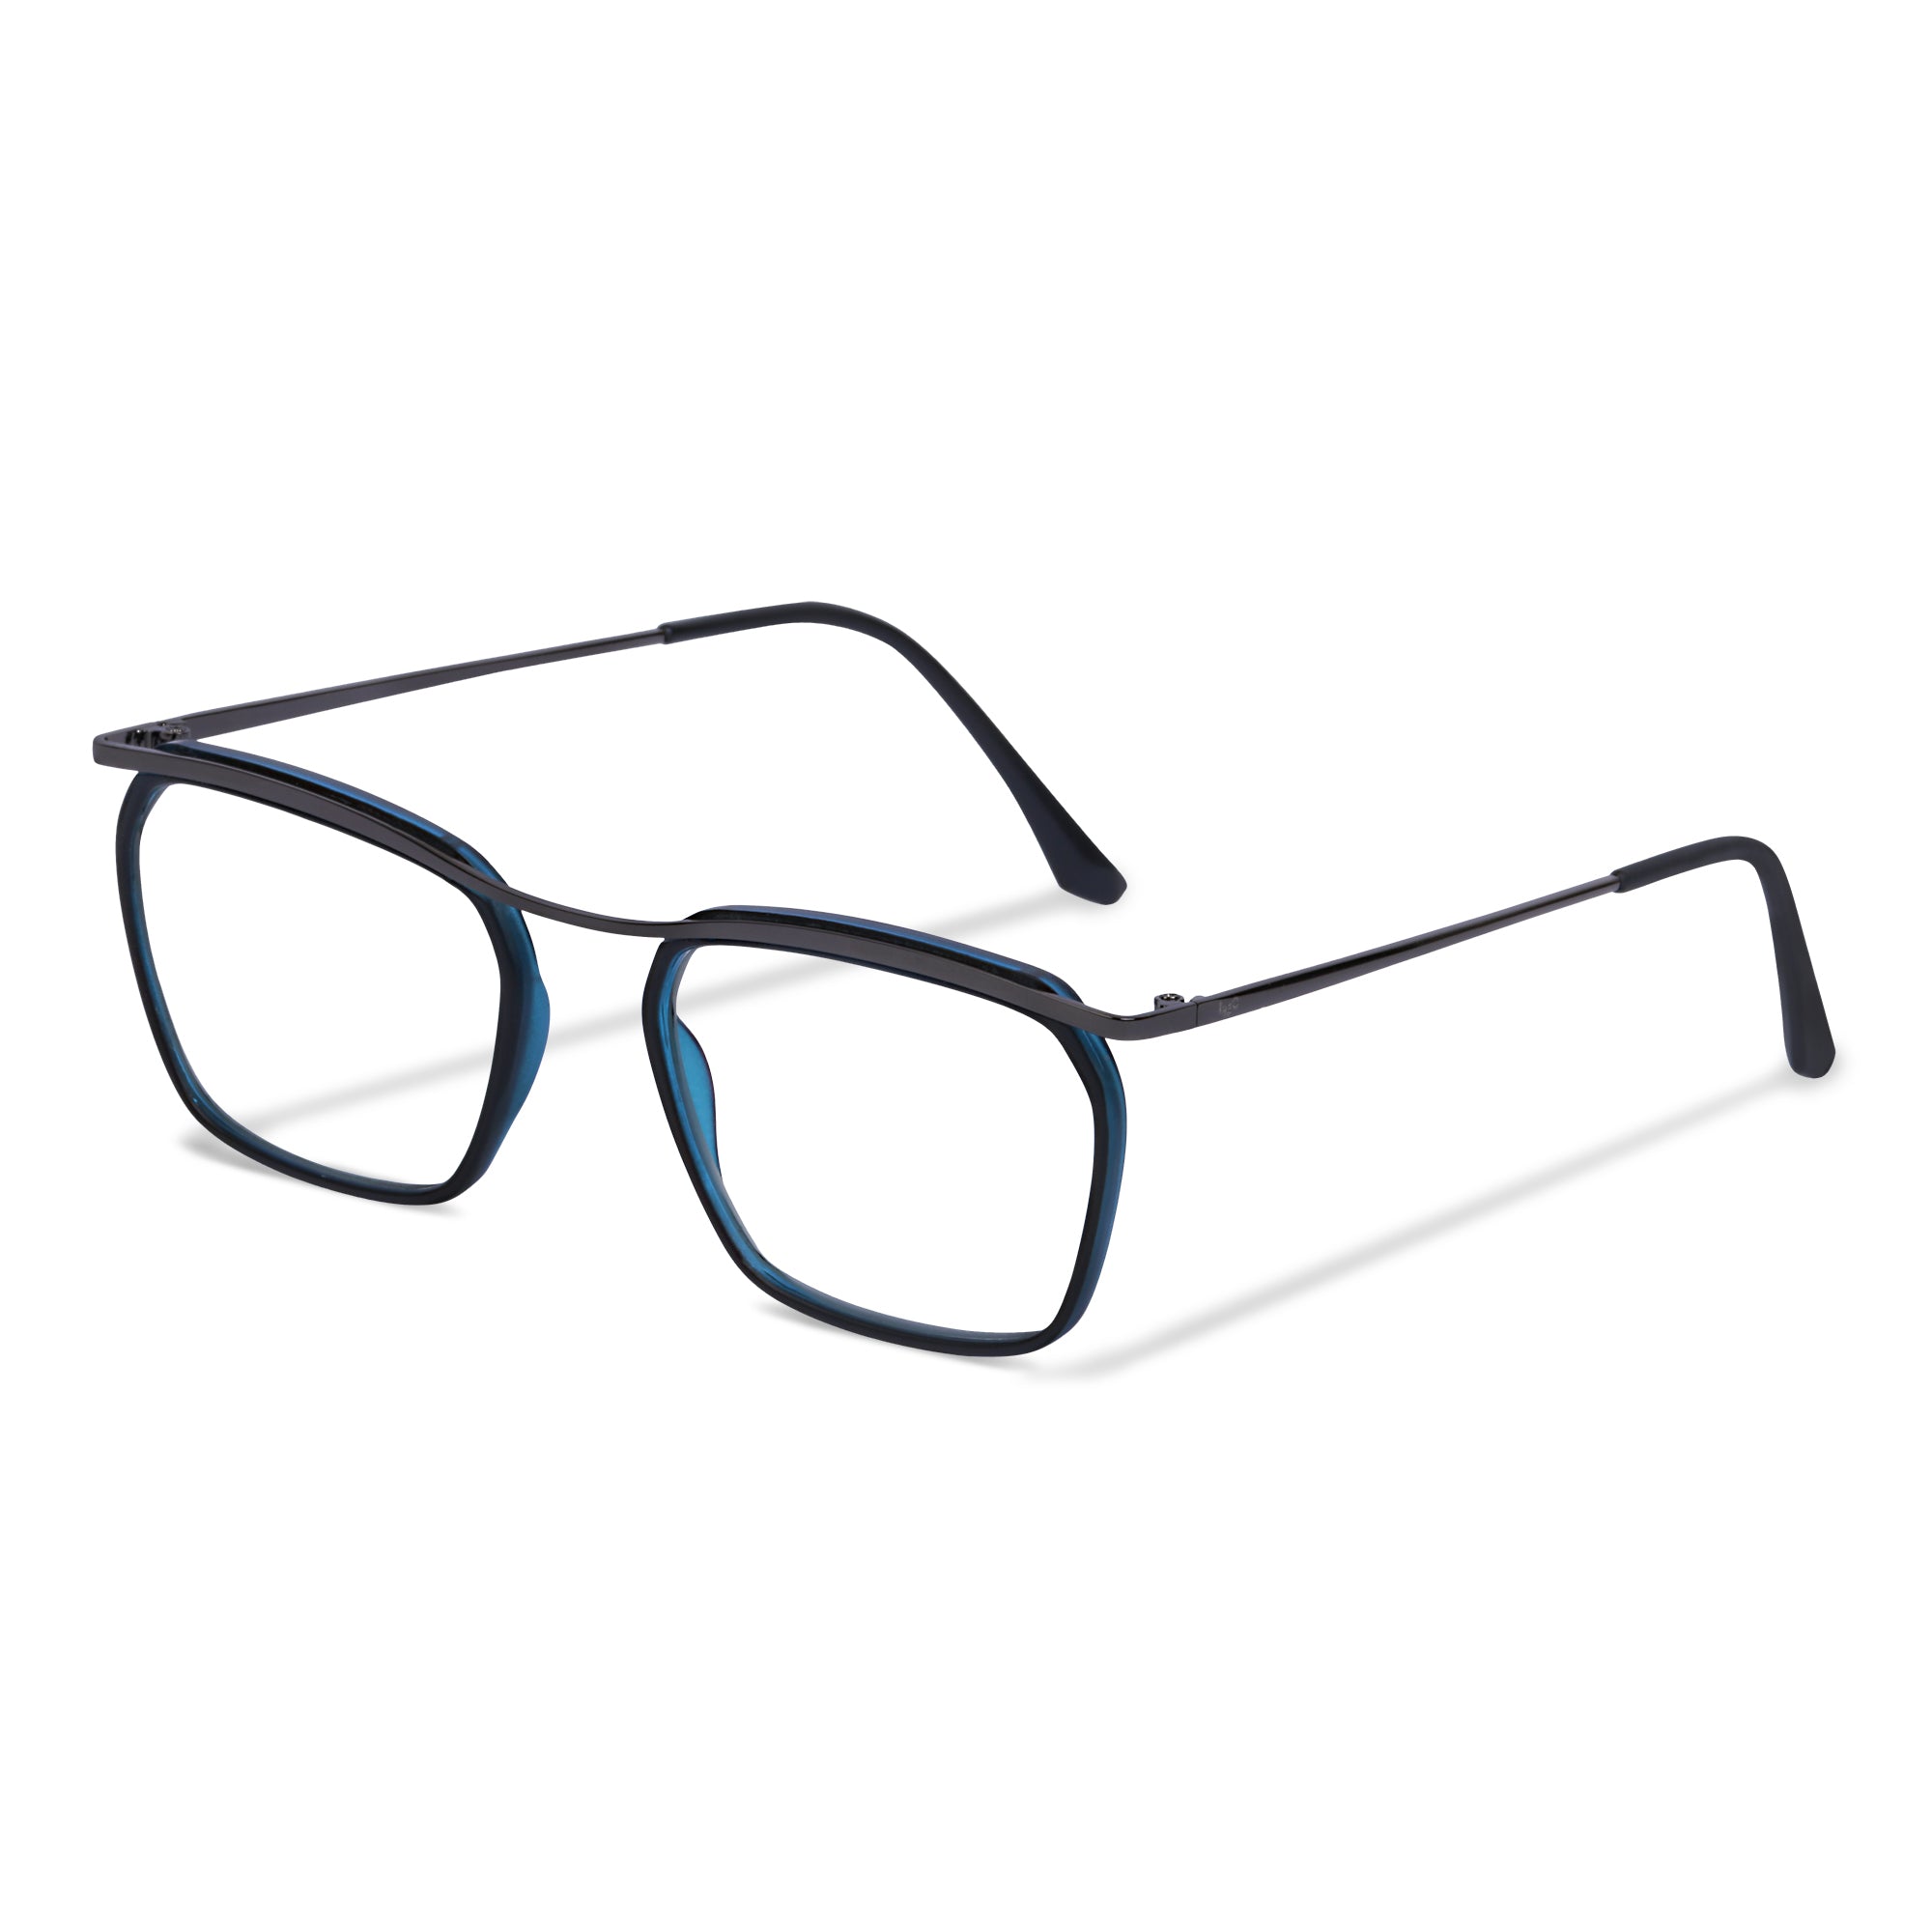 Black & Blue Square Rimmed Eyeglasses - L1543